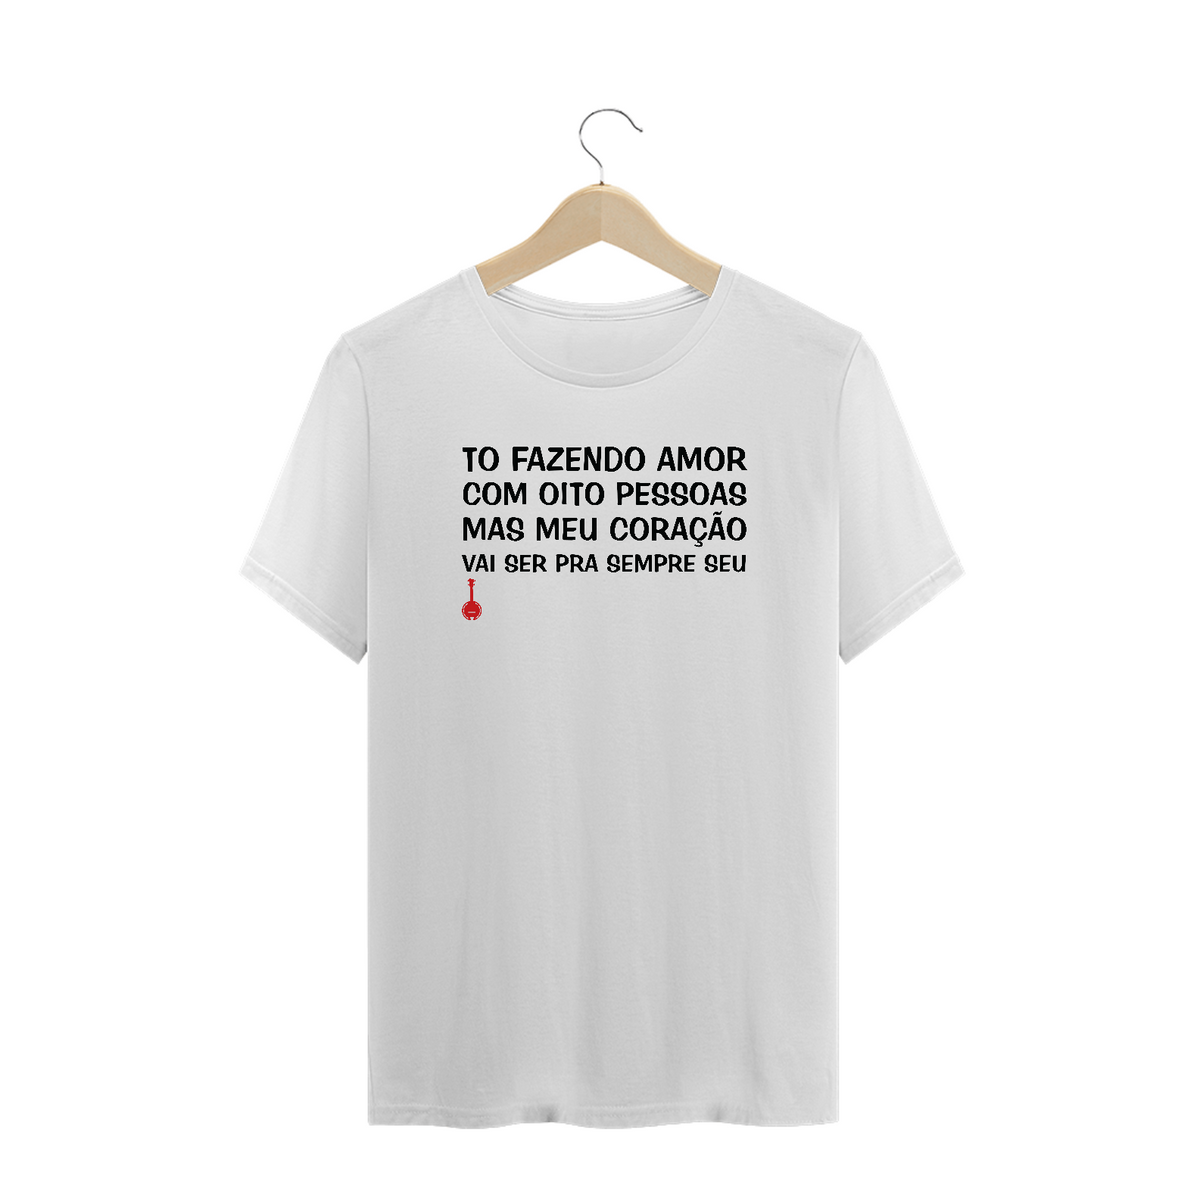 Nome do produto: Camiseta Plus Size To Fazendo Amor com Oito Pessoas - Branca